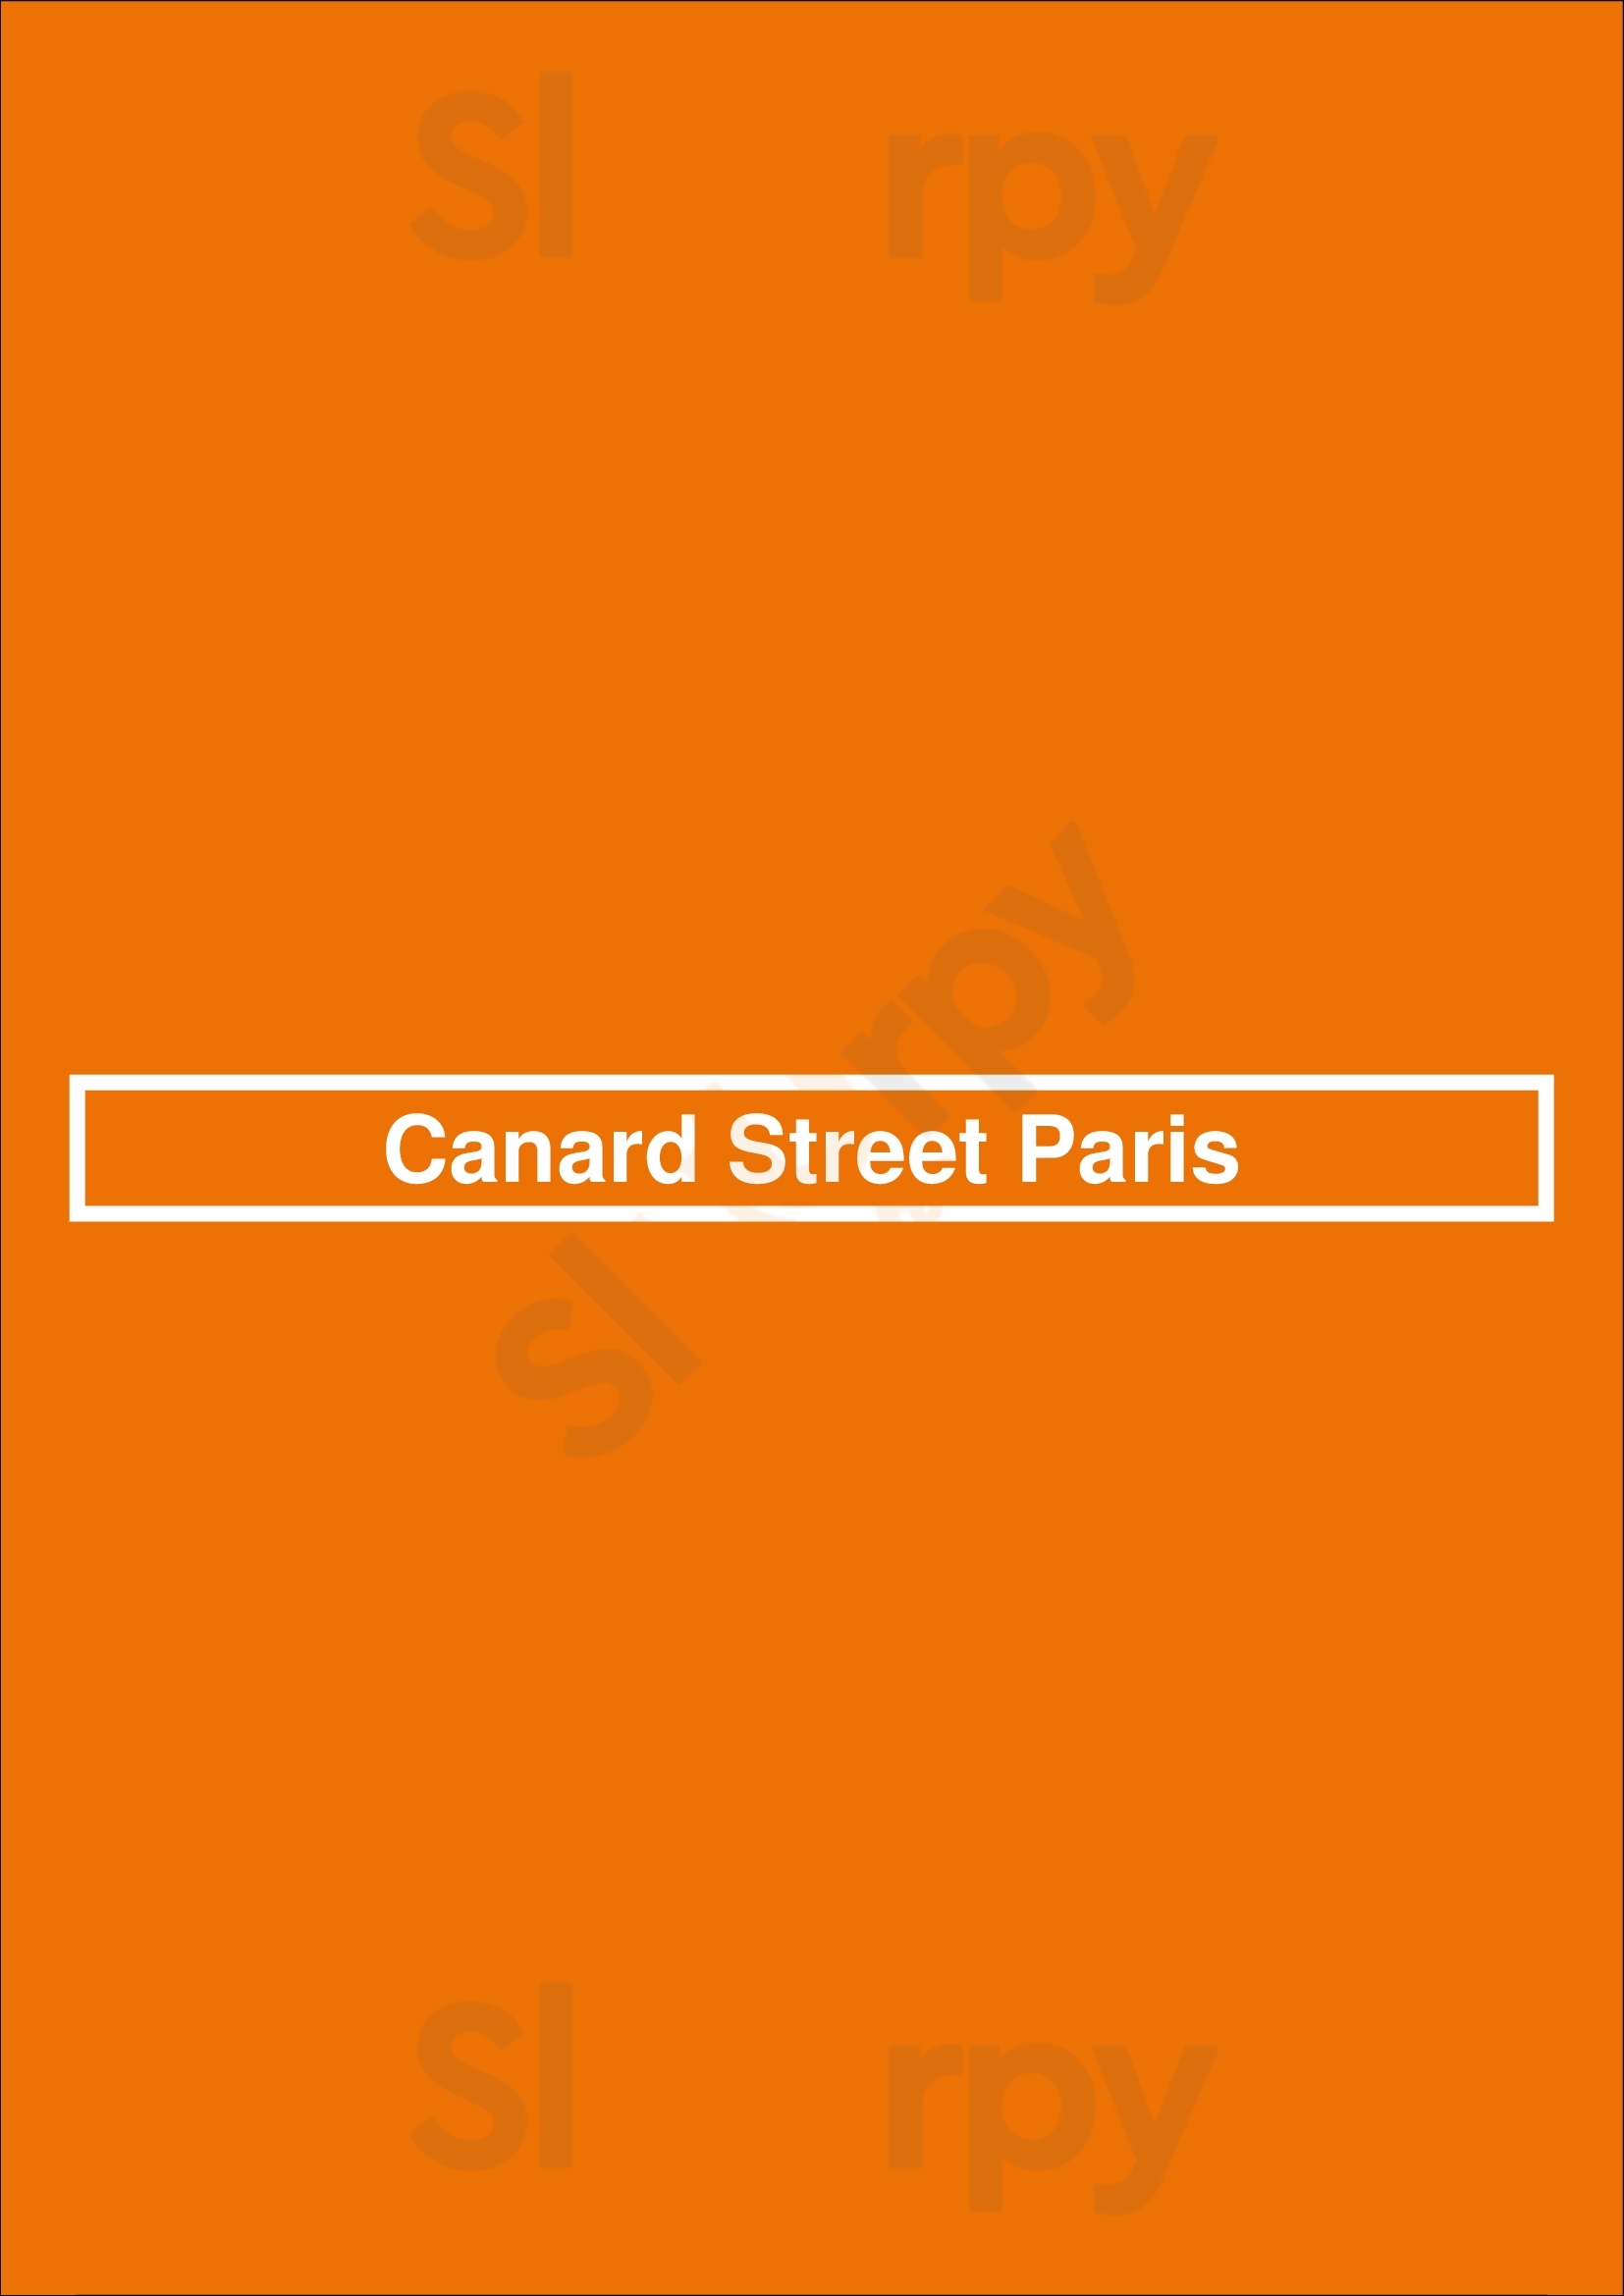 Canard Street Paris Paris Menu - 1